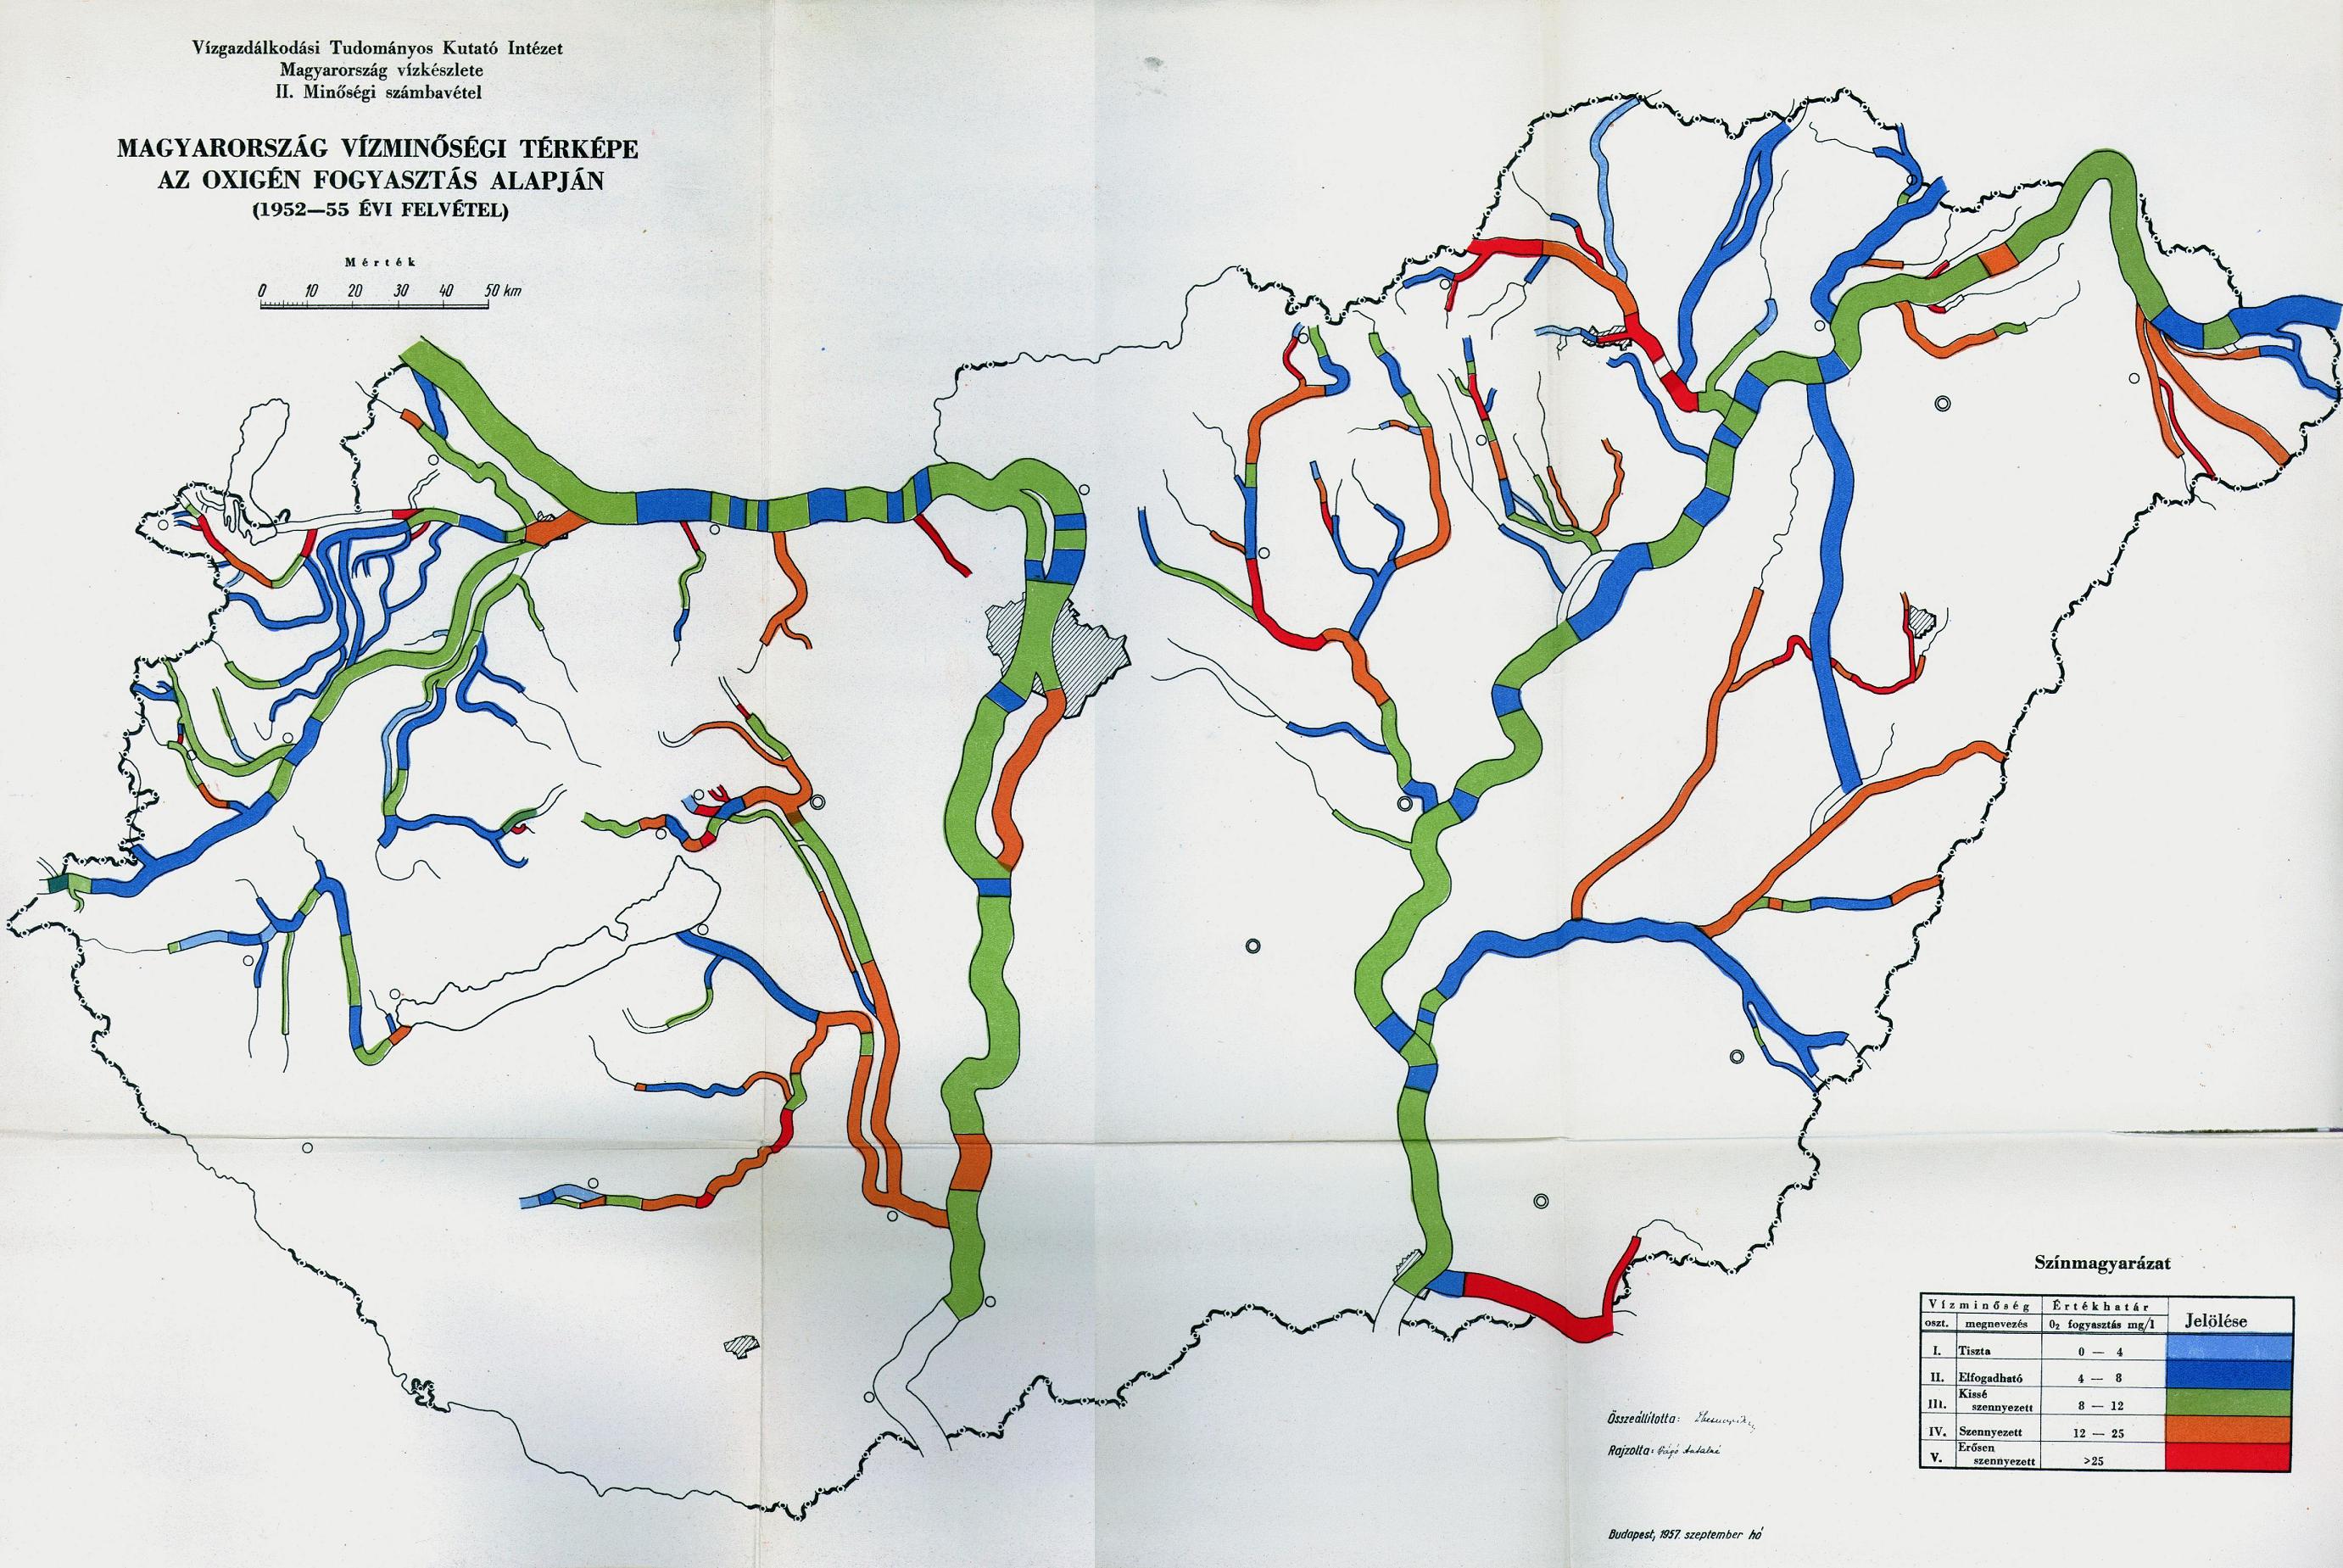 magyarország gyógyvizei térkép 50 éve történt   Országos Vízügyi Főigazgatóság magyarország gyógyvizei térkép